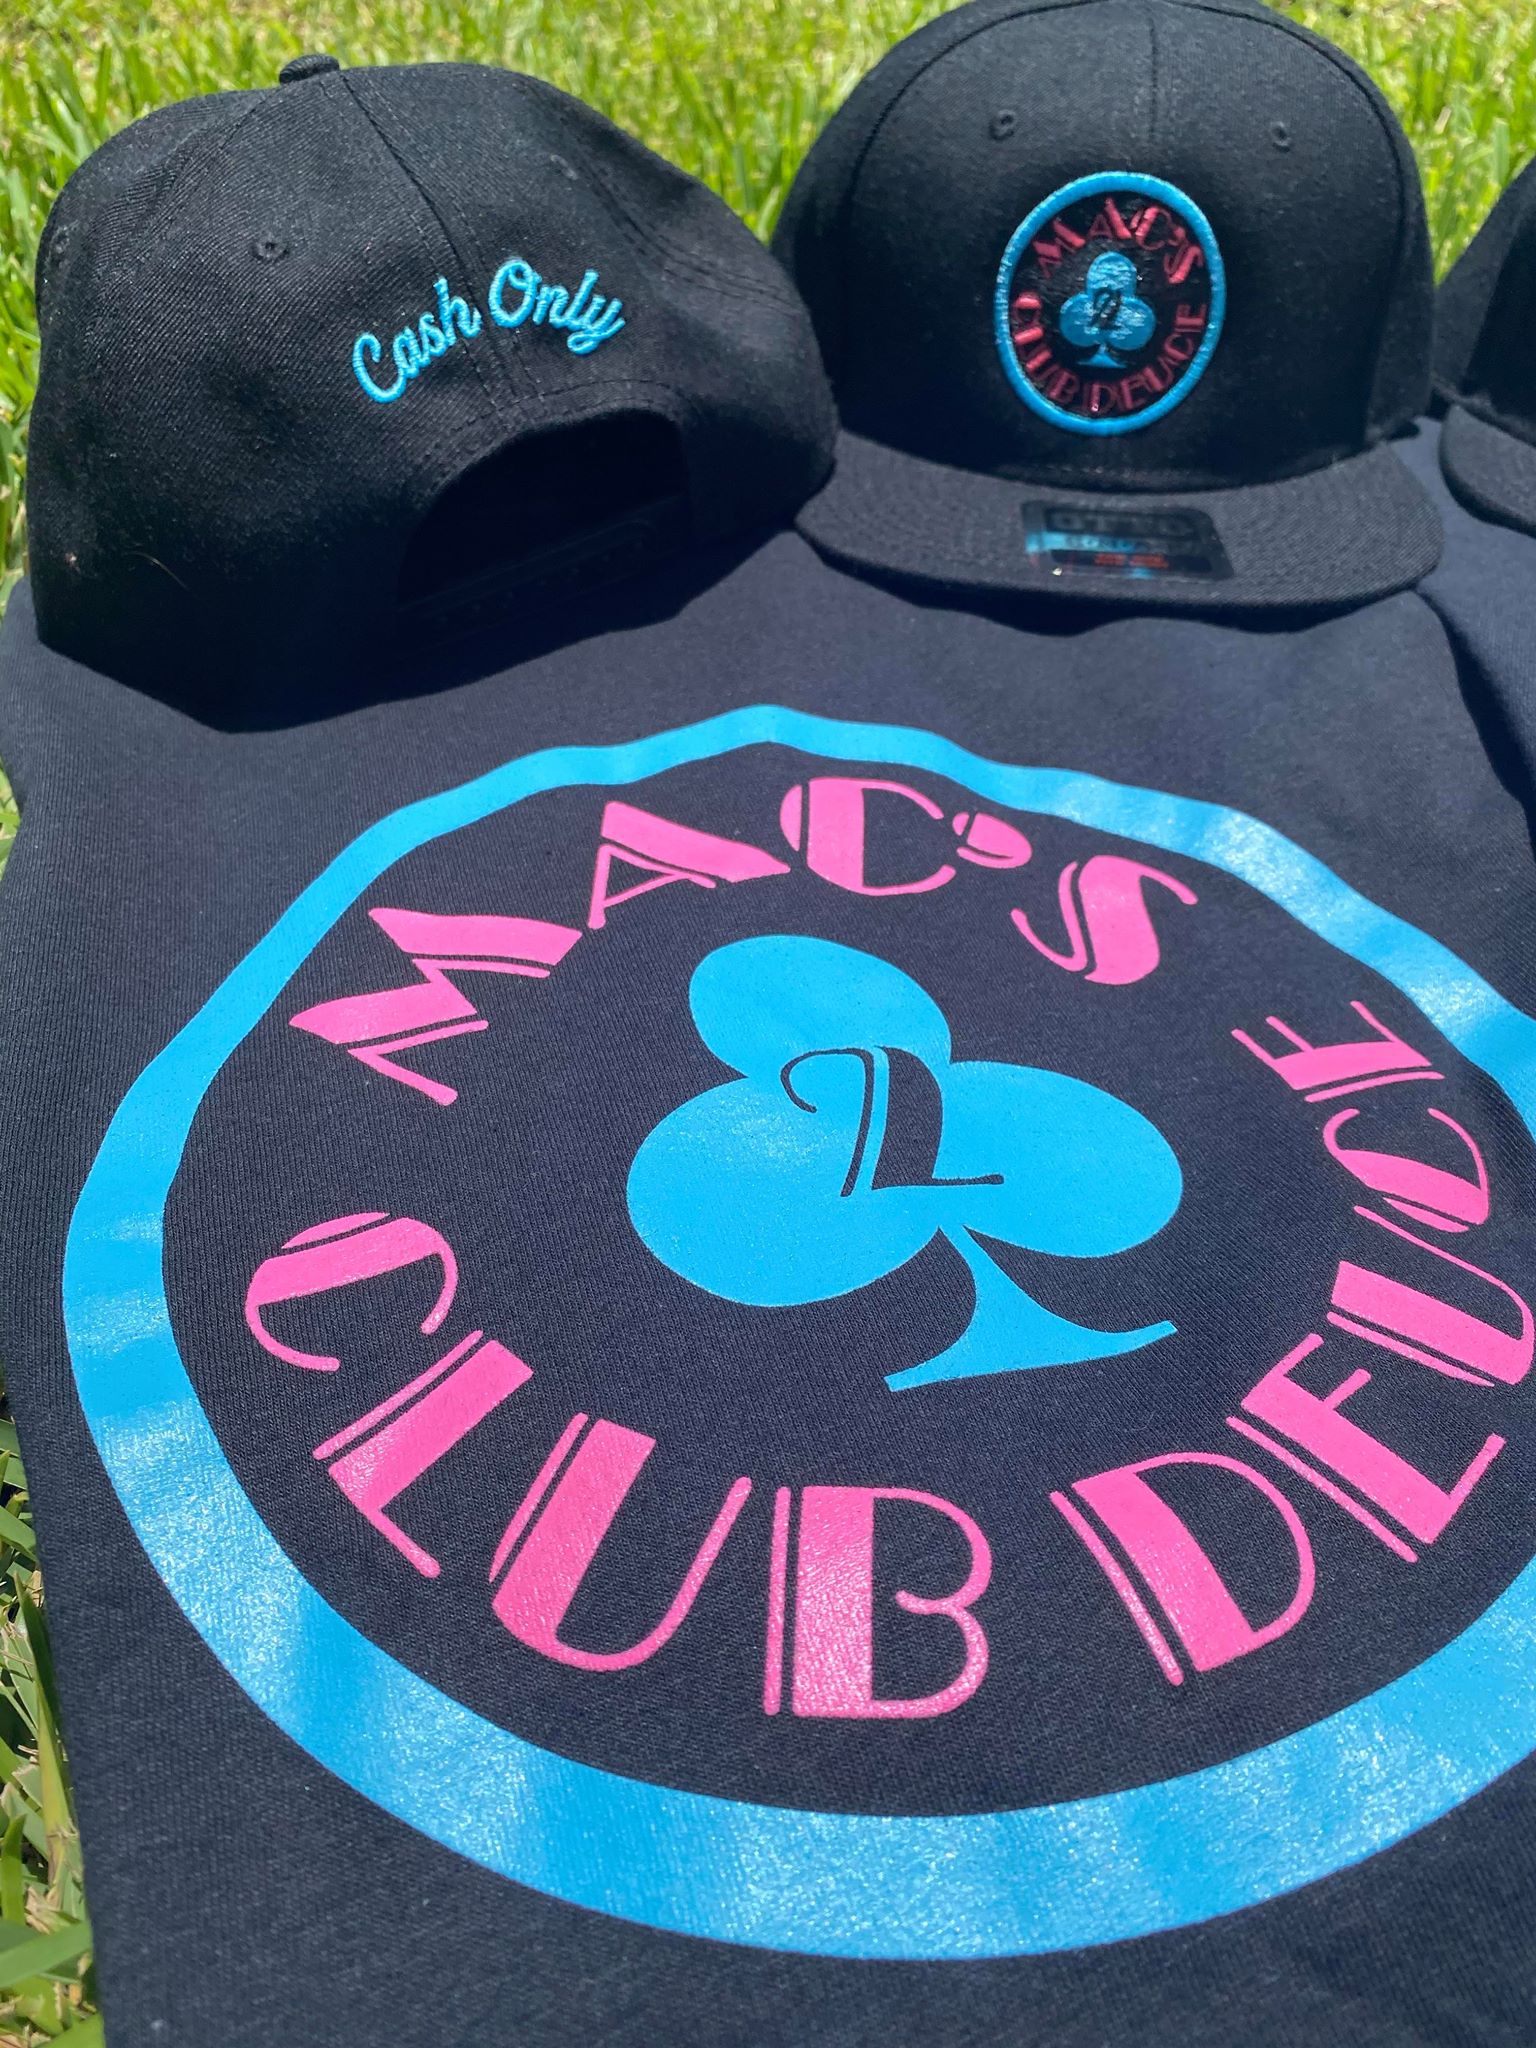 Mac's Club Deuce “Miami Vice” (XXL) Tee & Hat Combo | Mac's Club Deuce ♧